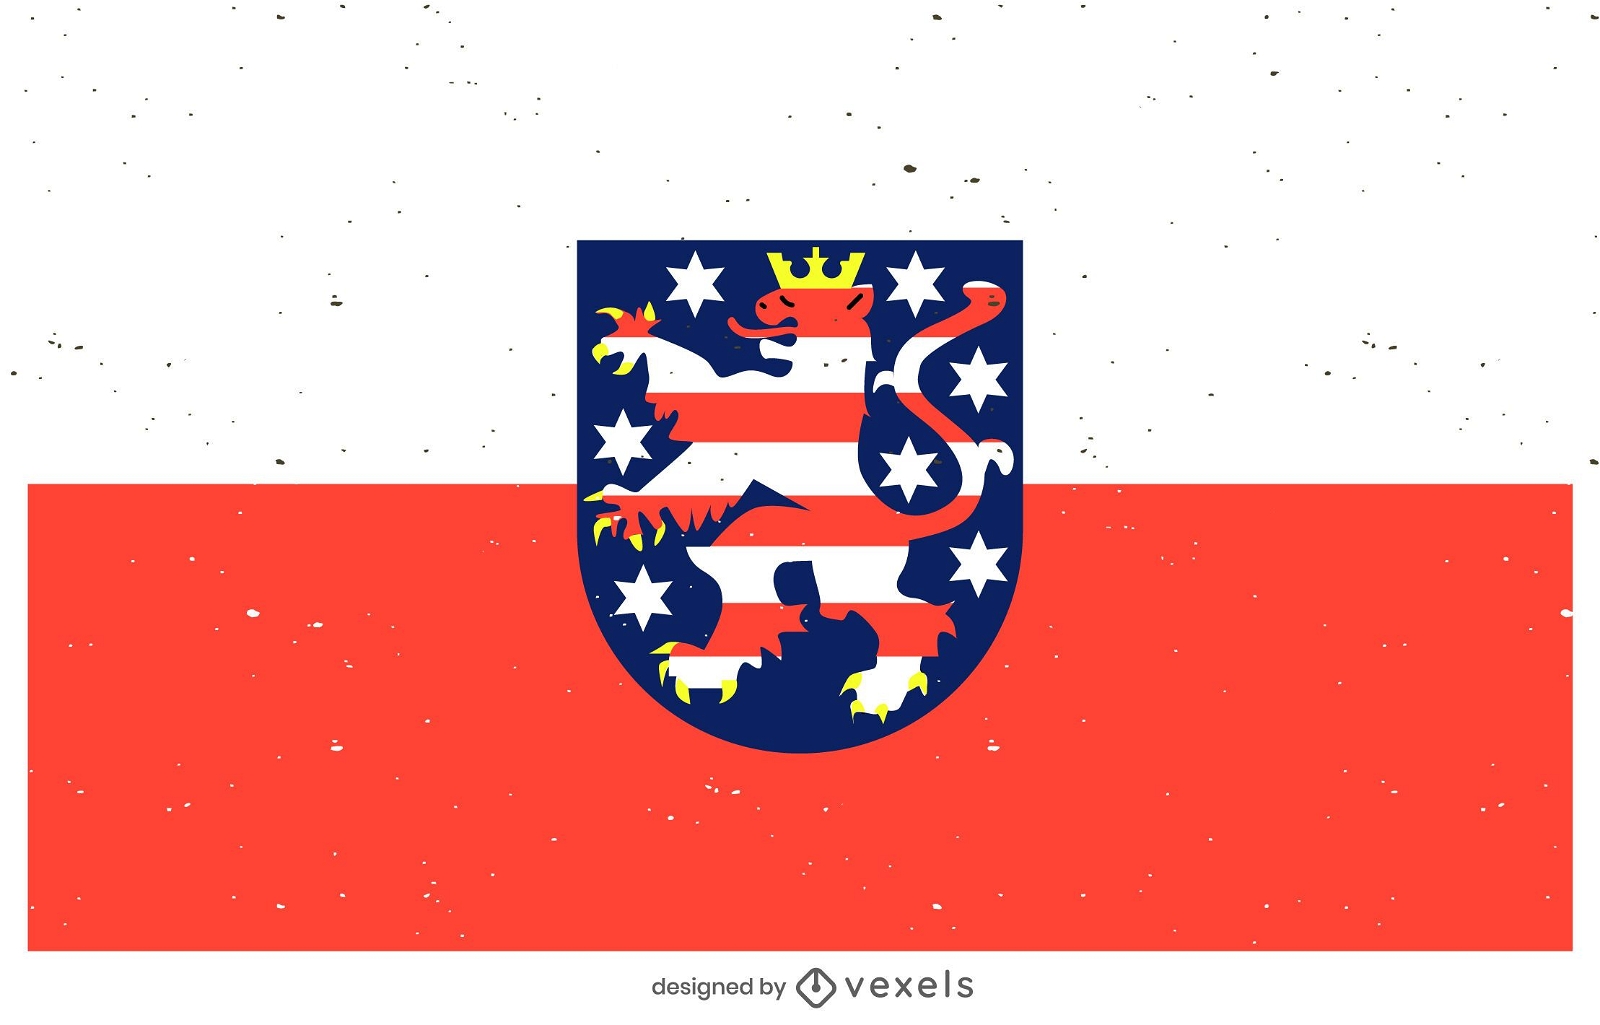 Dise?o de la bandera civil de Hessen